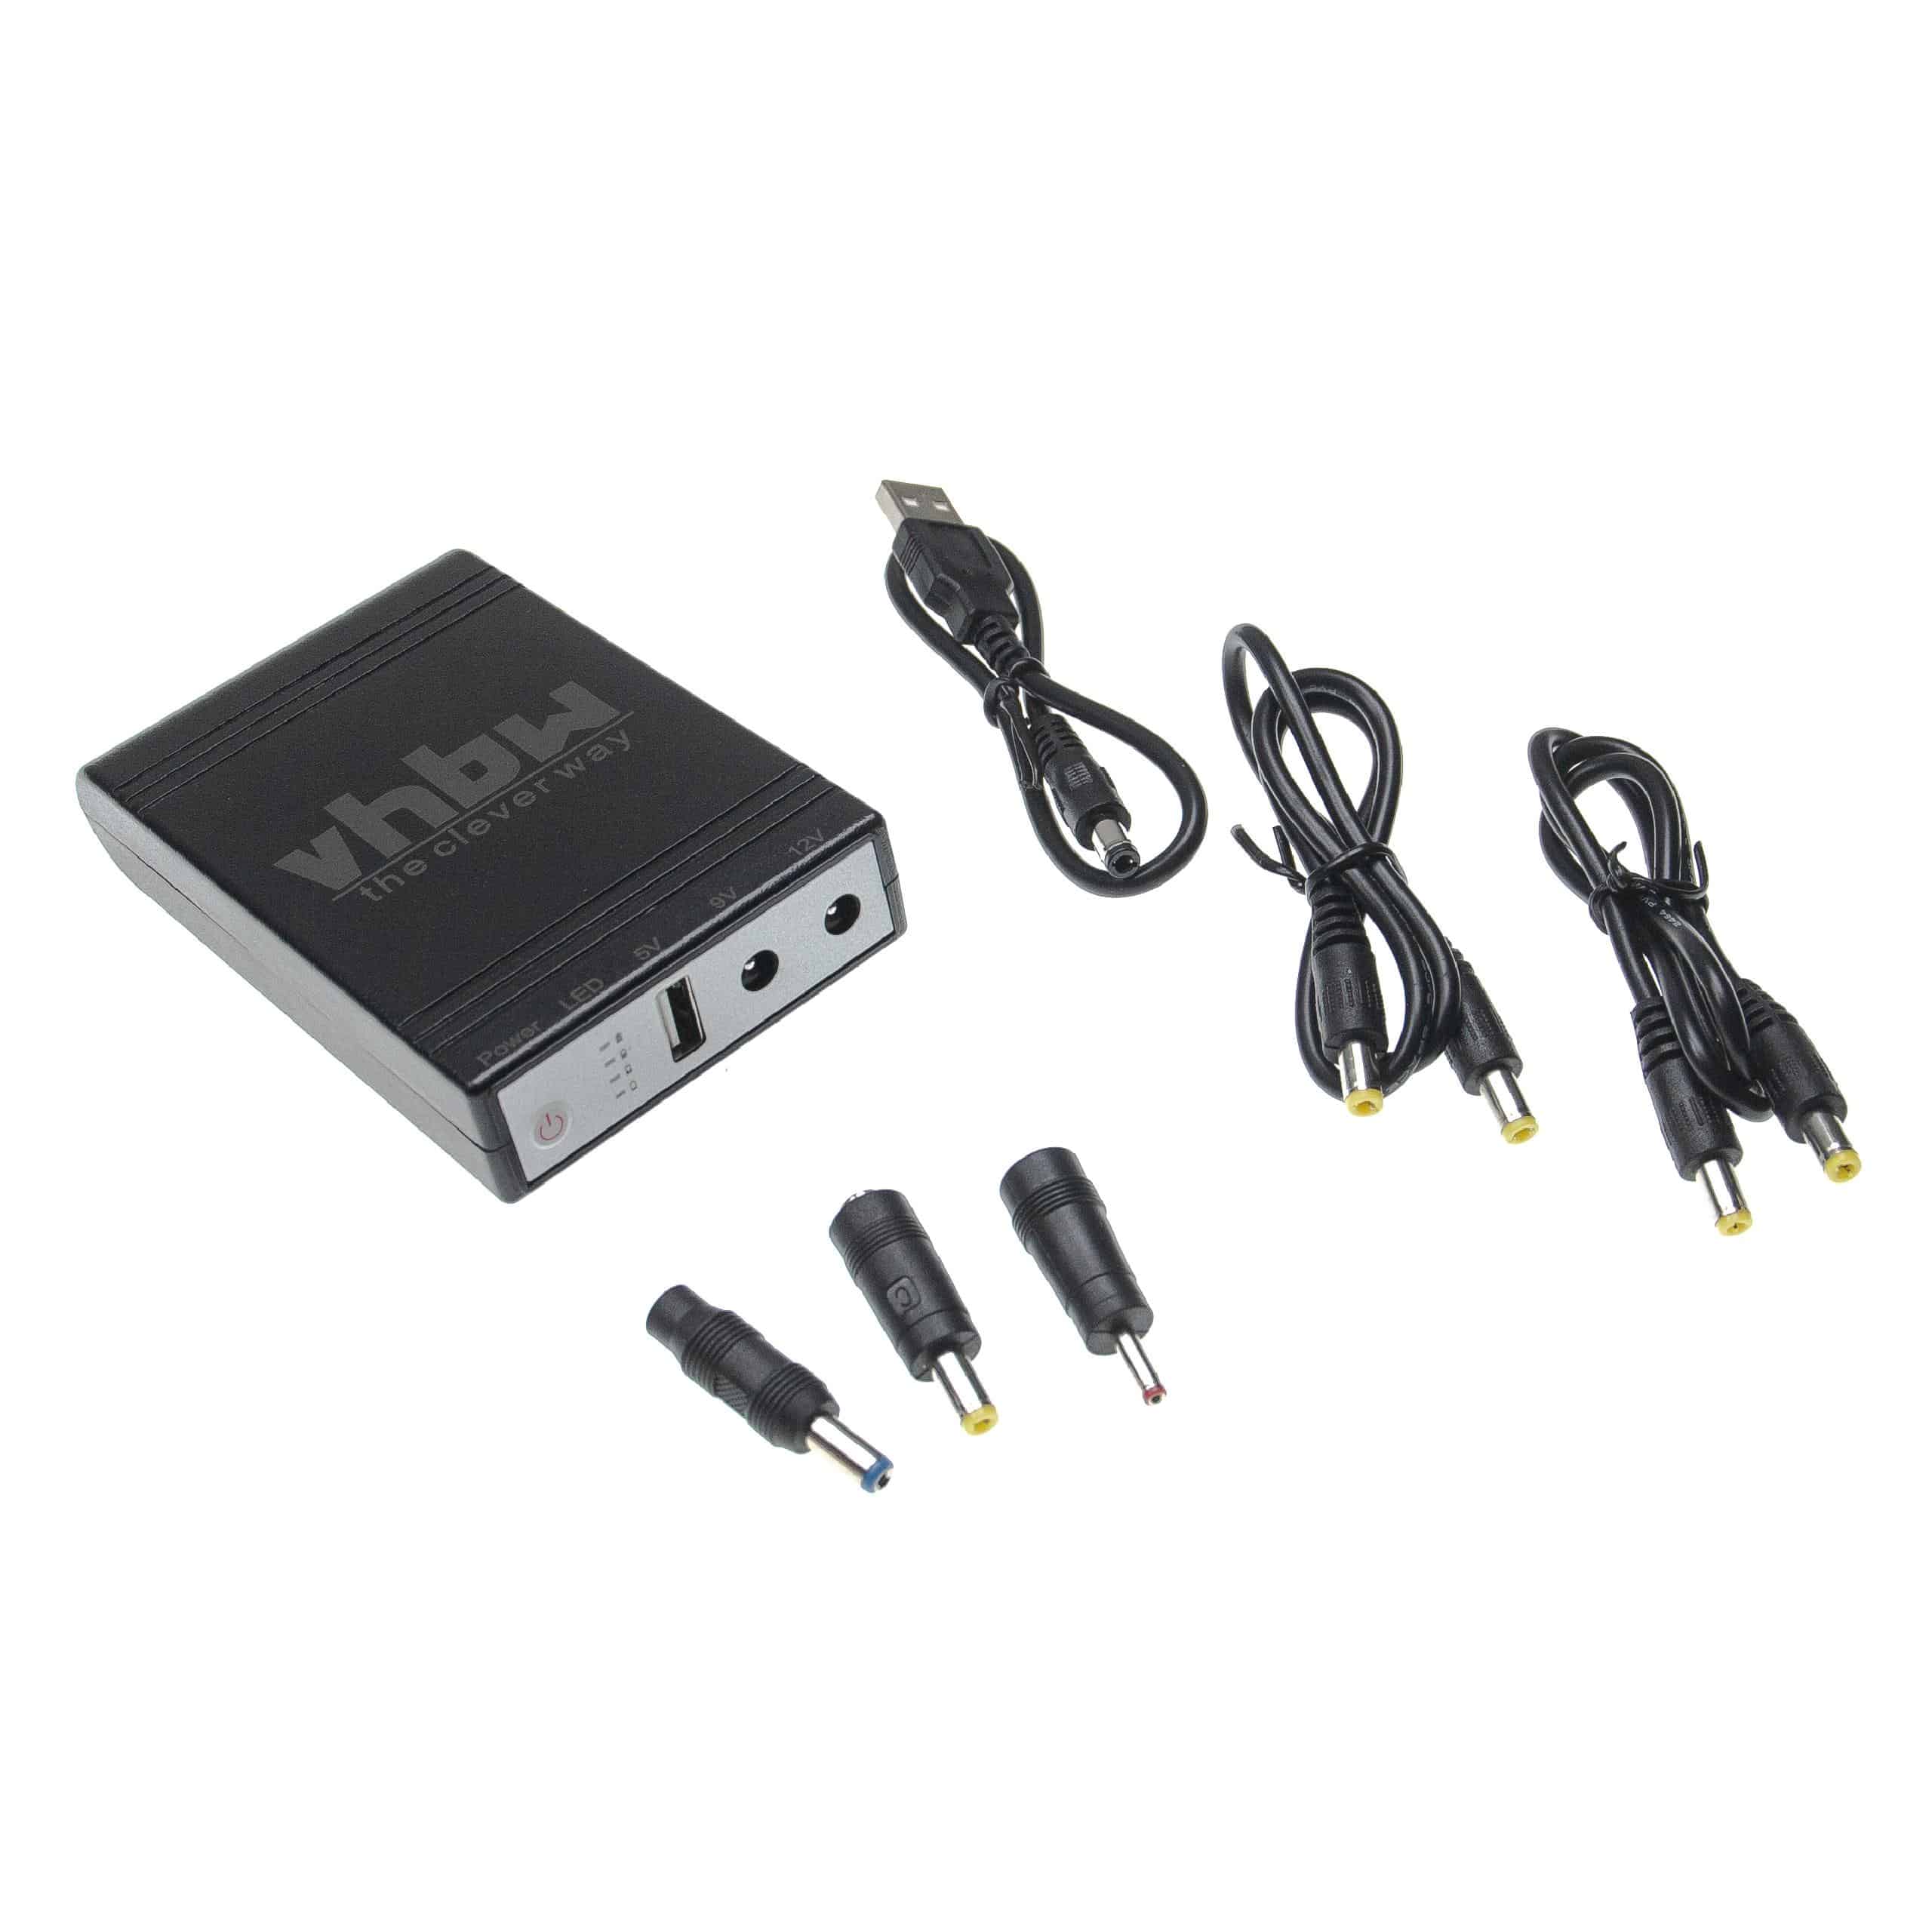 Mini UPS pour routeur, caméra IP, modem, ordinateur, etc. - USB 5 V / DC 9 V / DC 12 V, 1,0 A